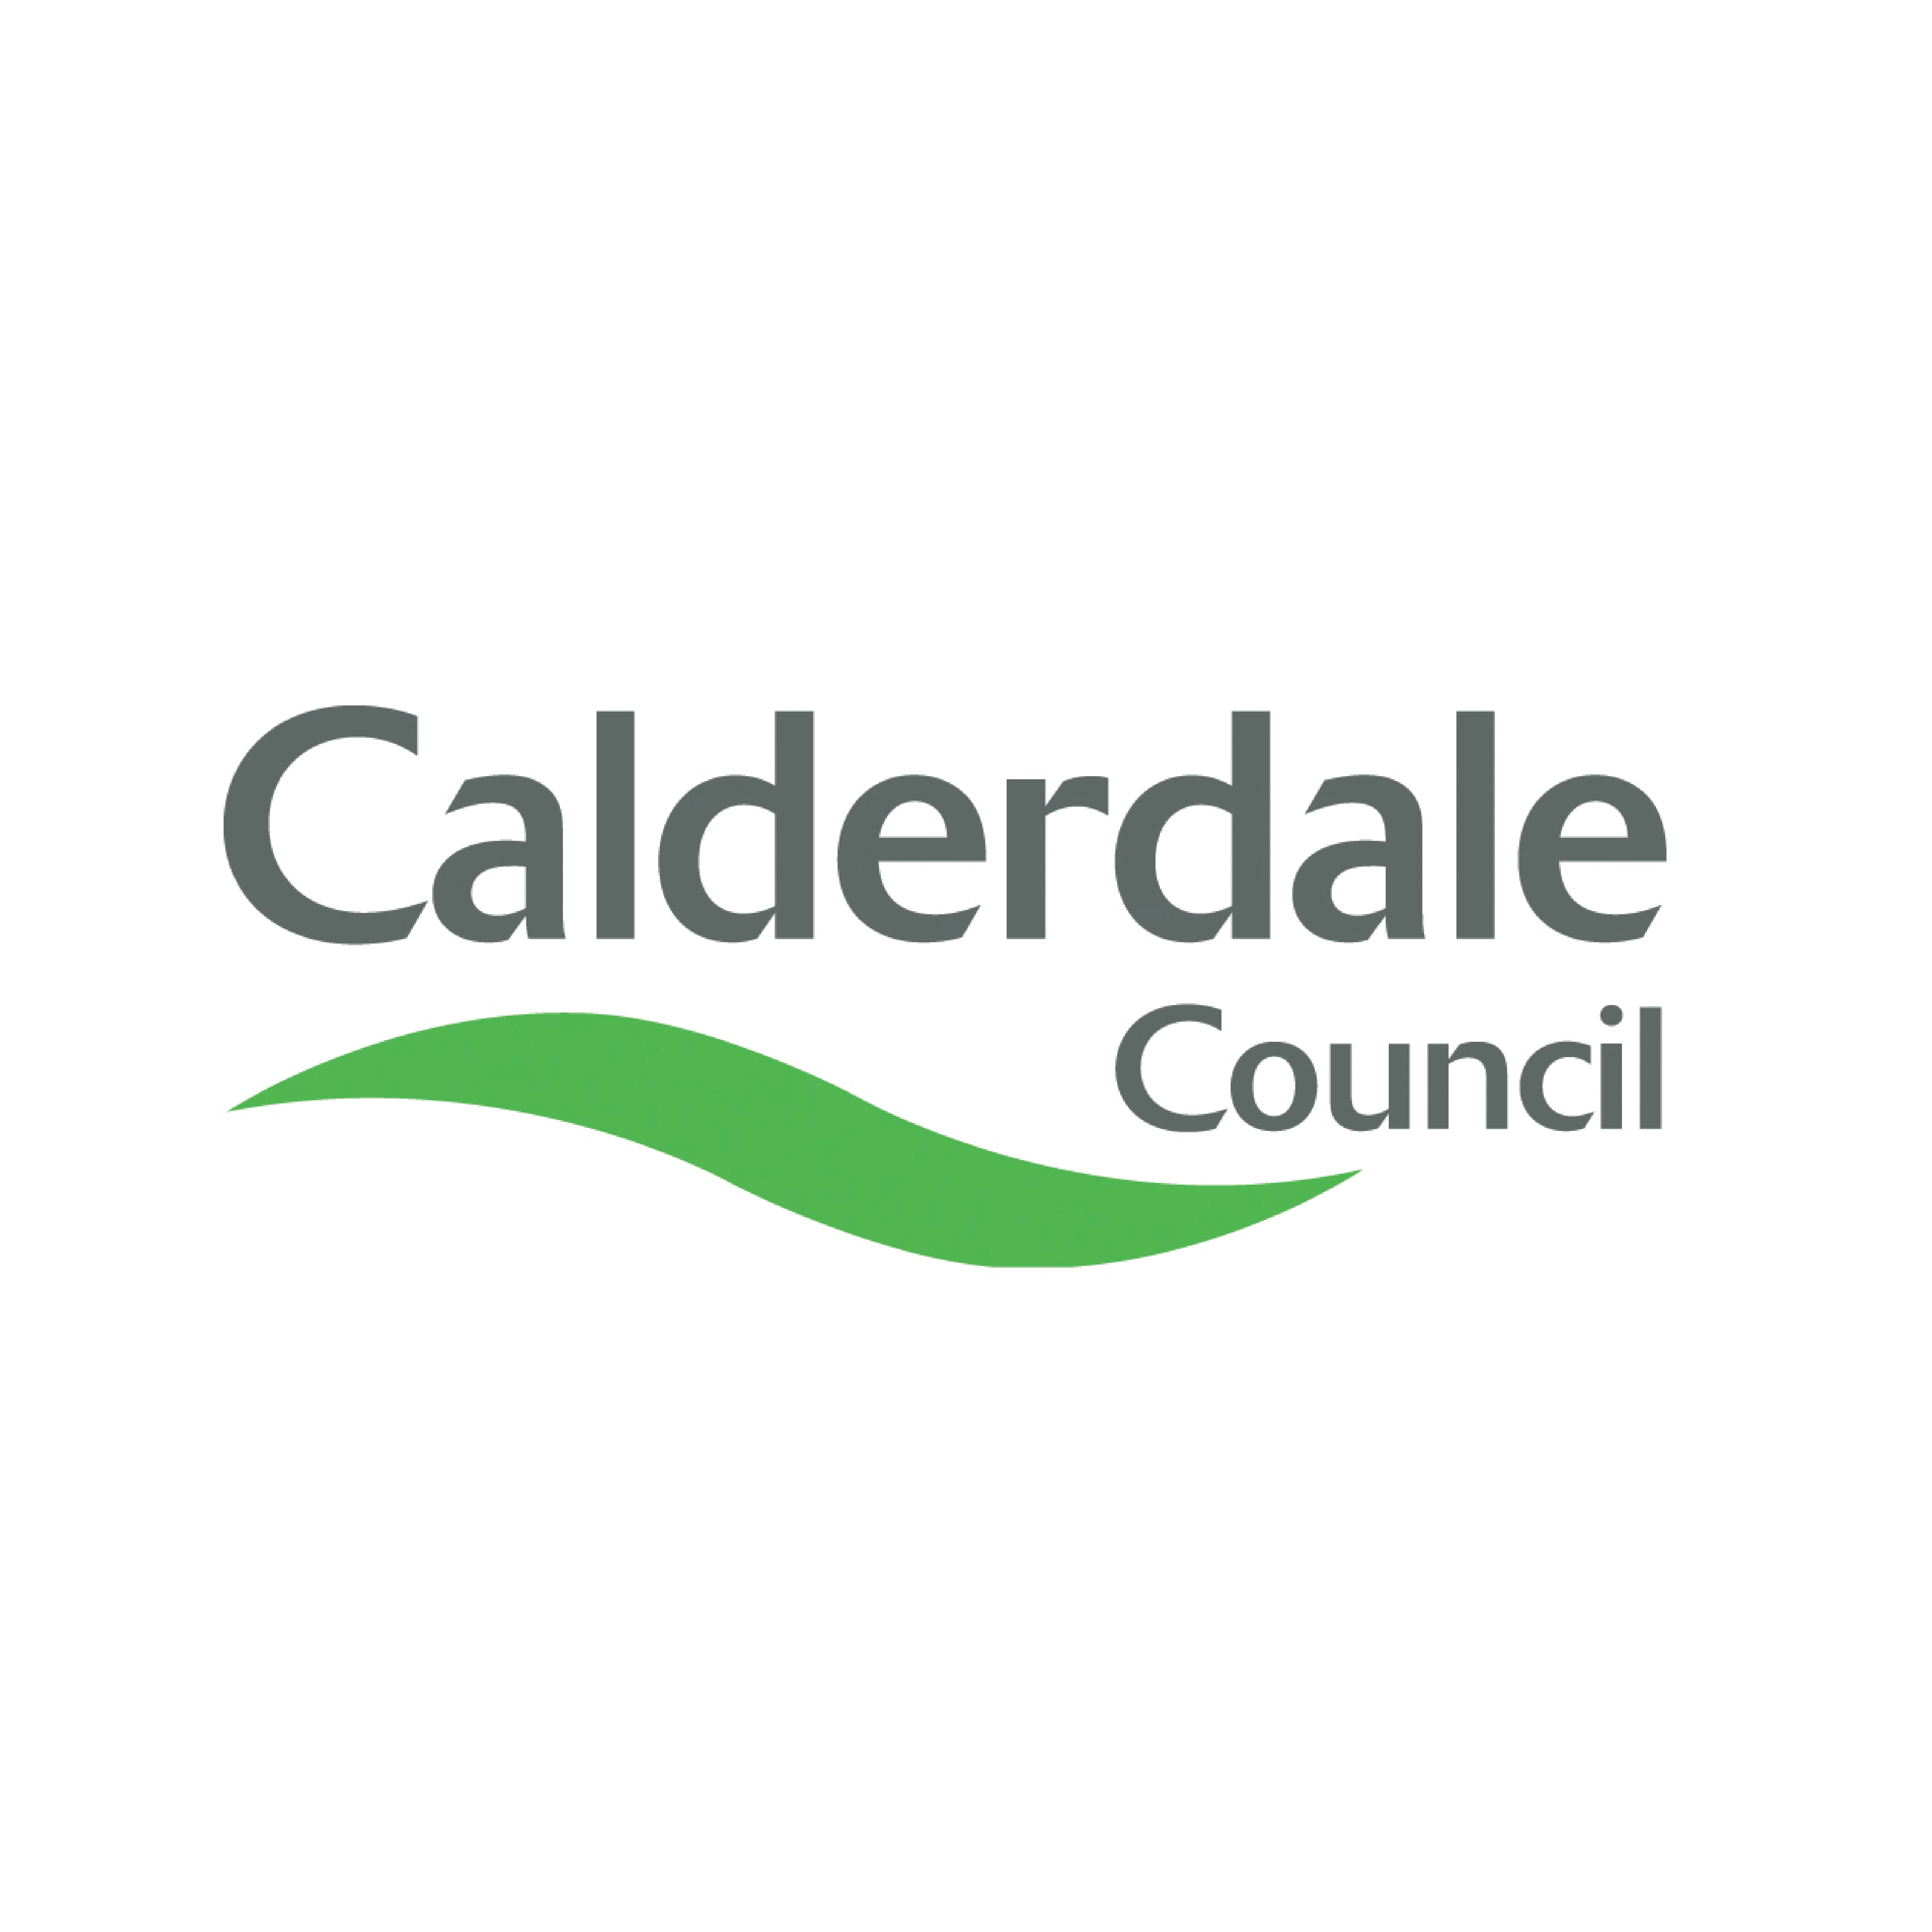 Calderdal Council